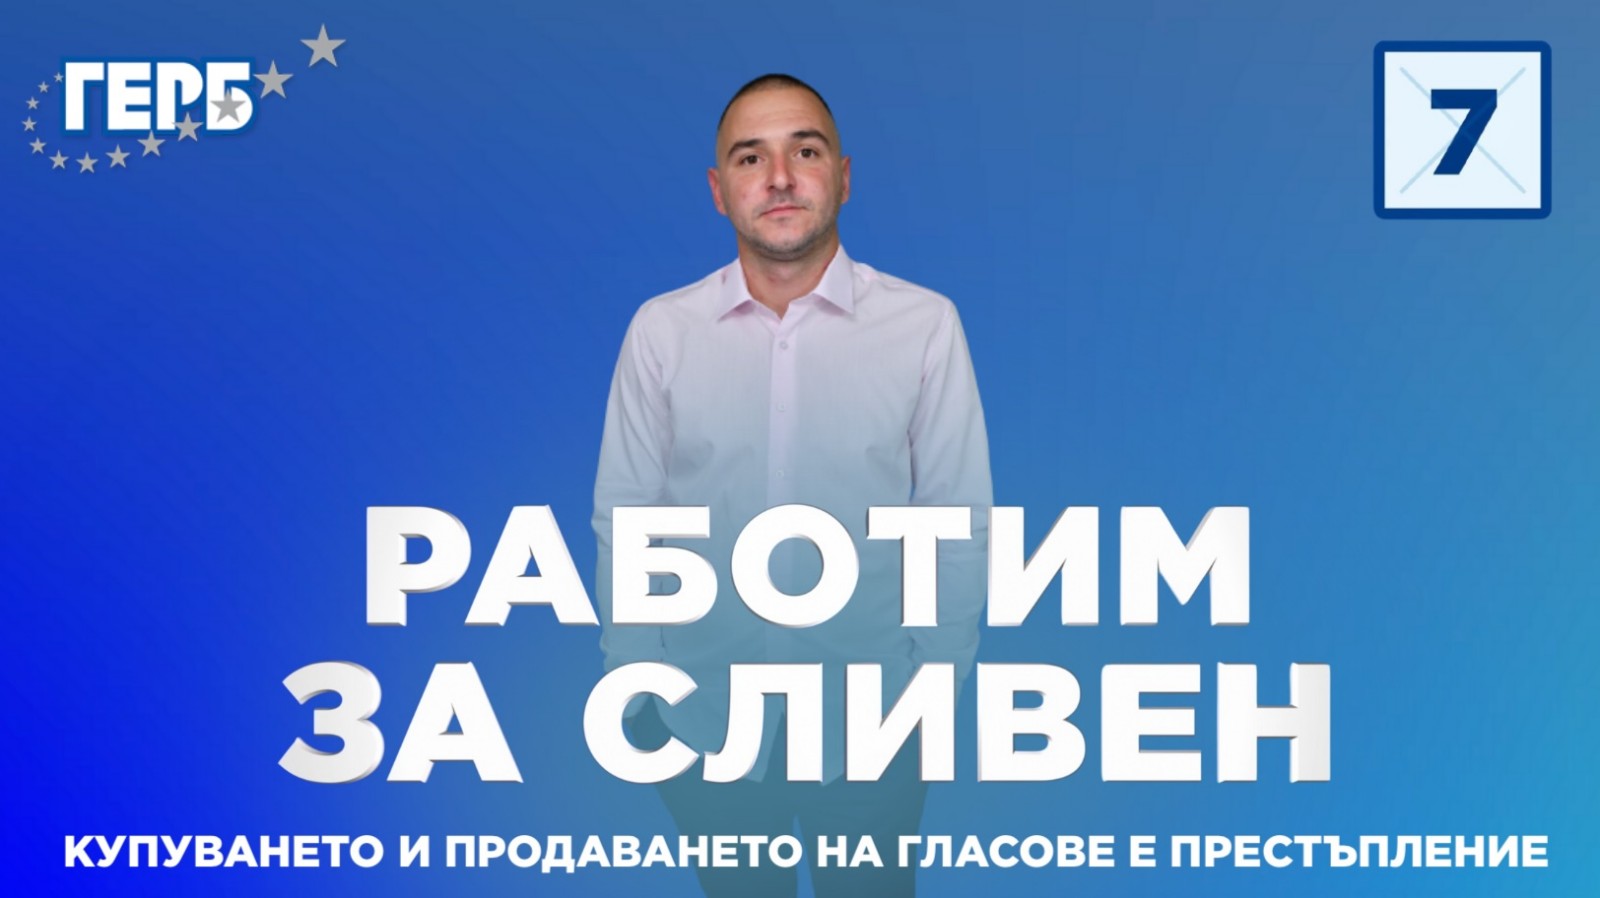 Тихомир Цанев е управител на транспортна фирма и кандидат за